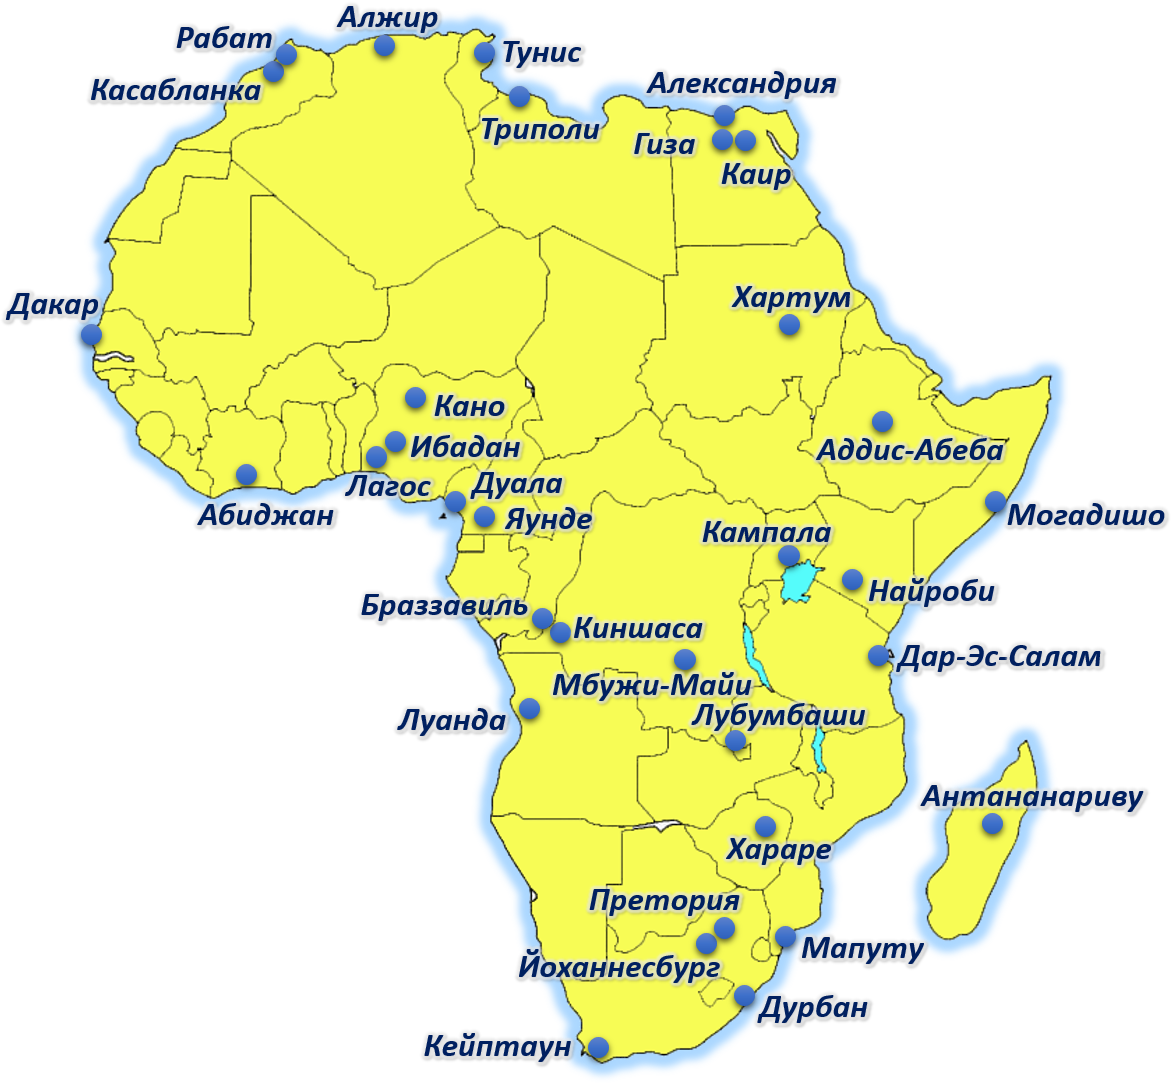 Крупнейшие города Африки на карте. Крупнейшие морские Порты Африки на карте. Морские Порты Африки на карте. Порты Африки на карте. Африканская столица 7